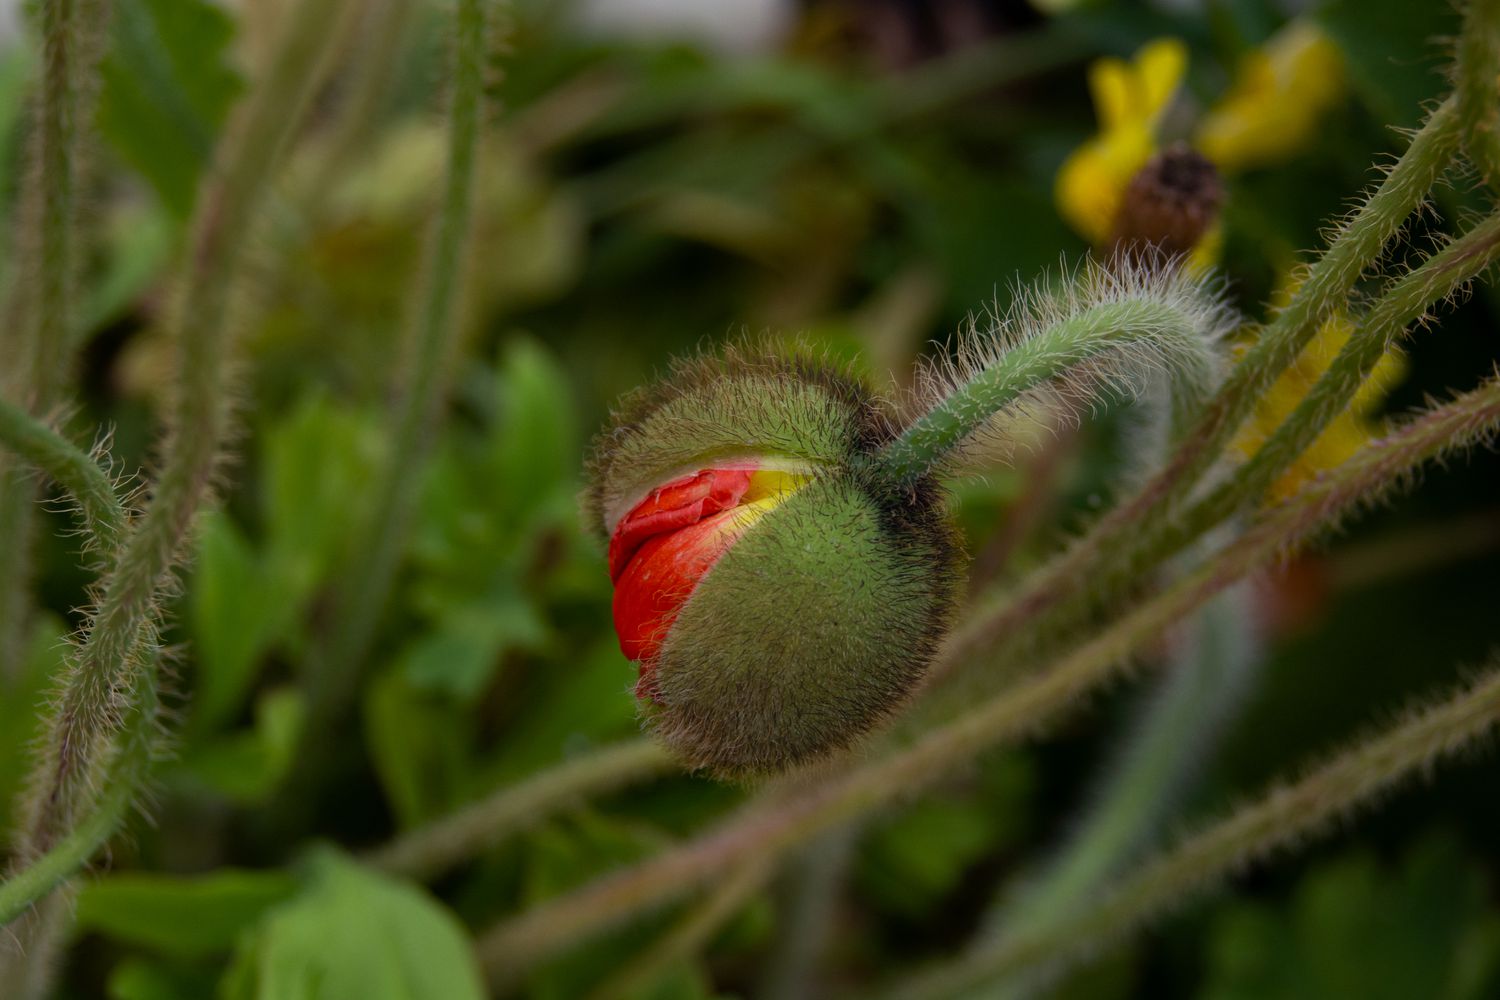 Icelandic poppy red flower bud on fuzzy stem closeup